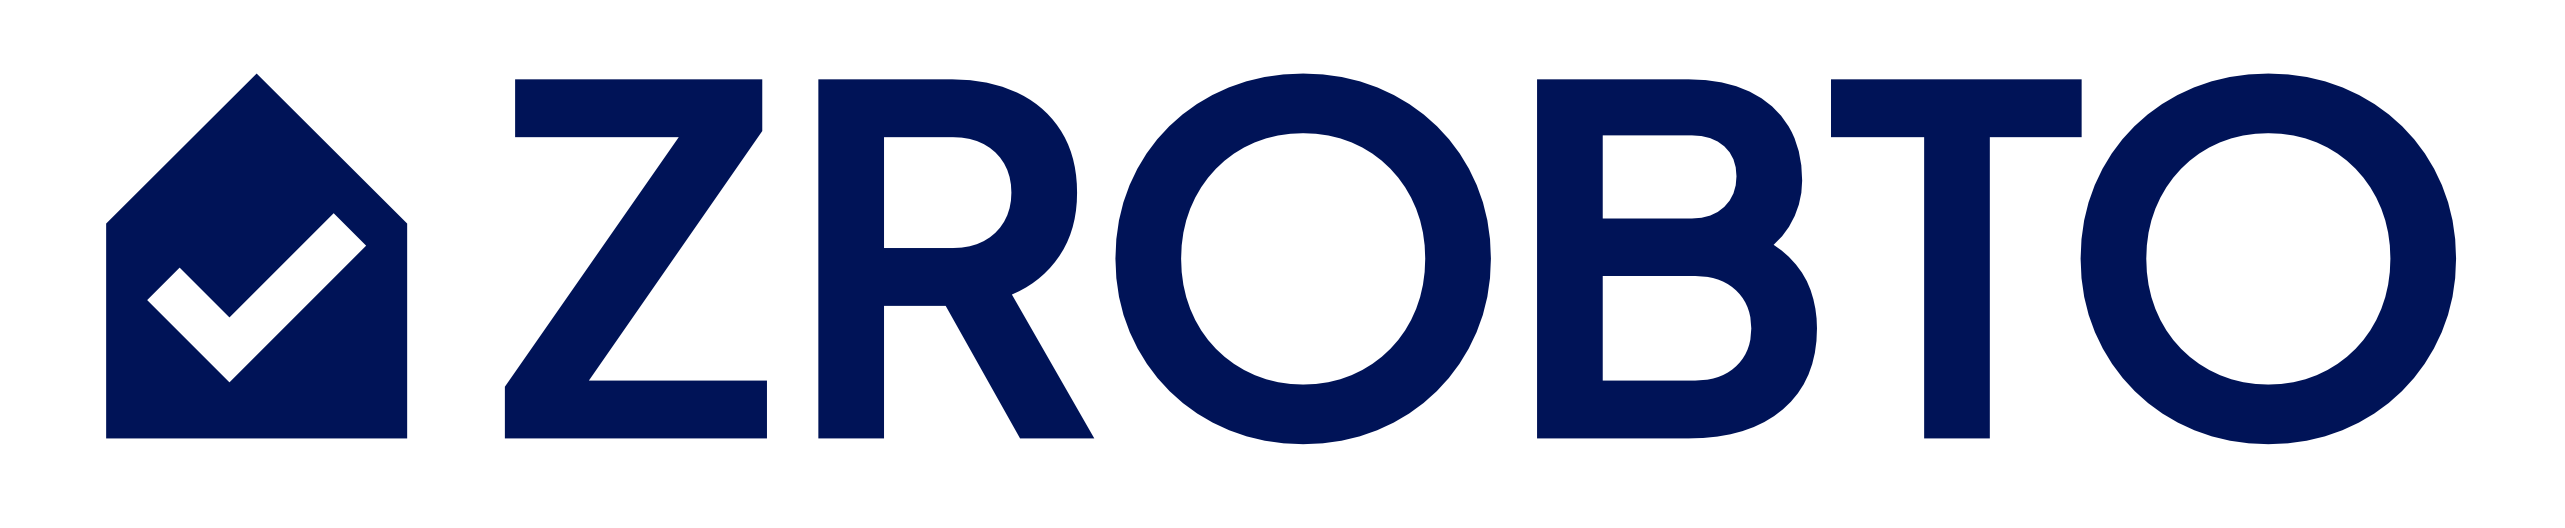 ZROBTO-holding-logo@3x